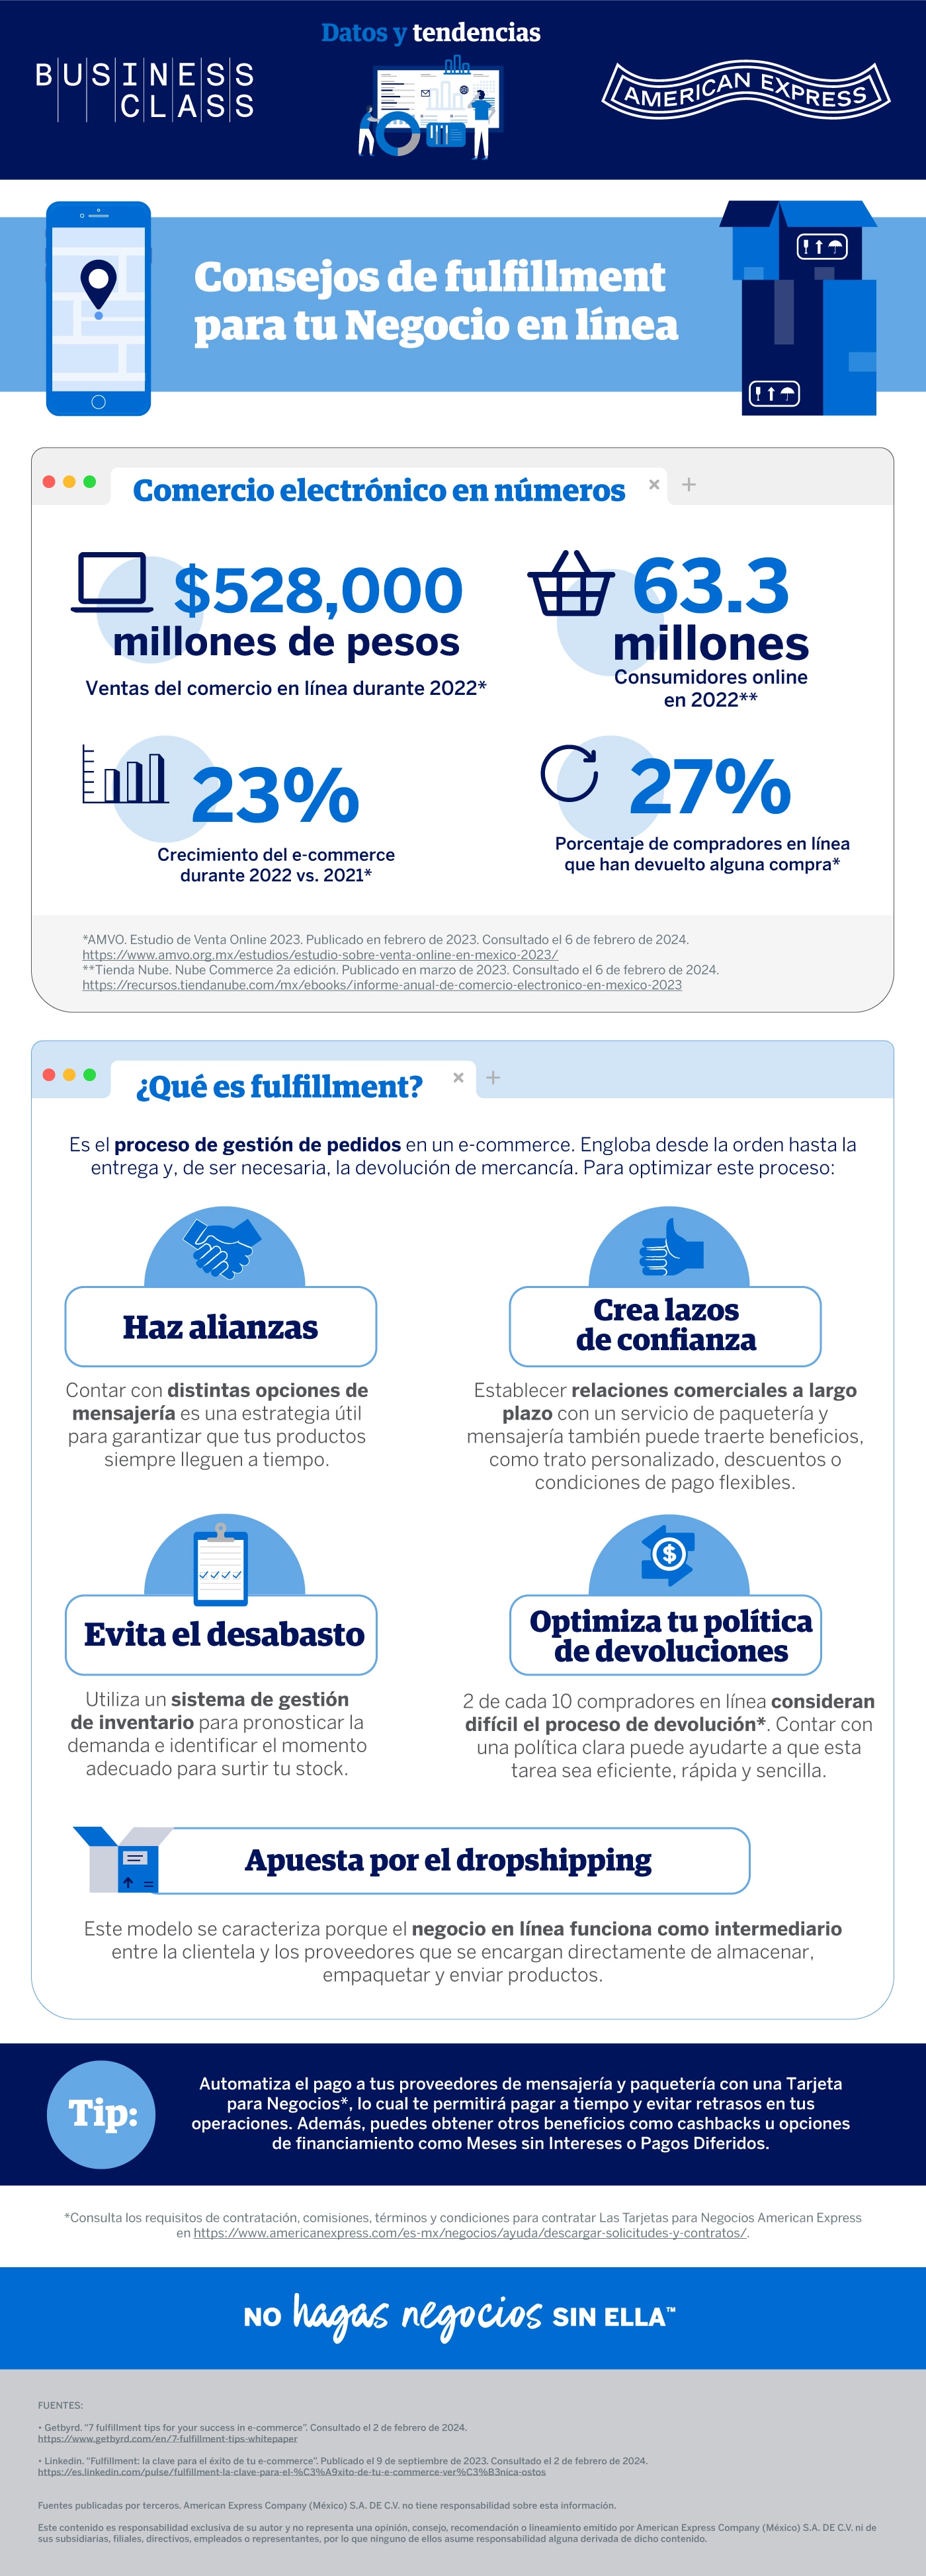 010324_Infografia-Consejos-Fulfillment_BusinessClass_CS_V02